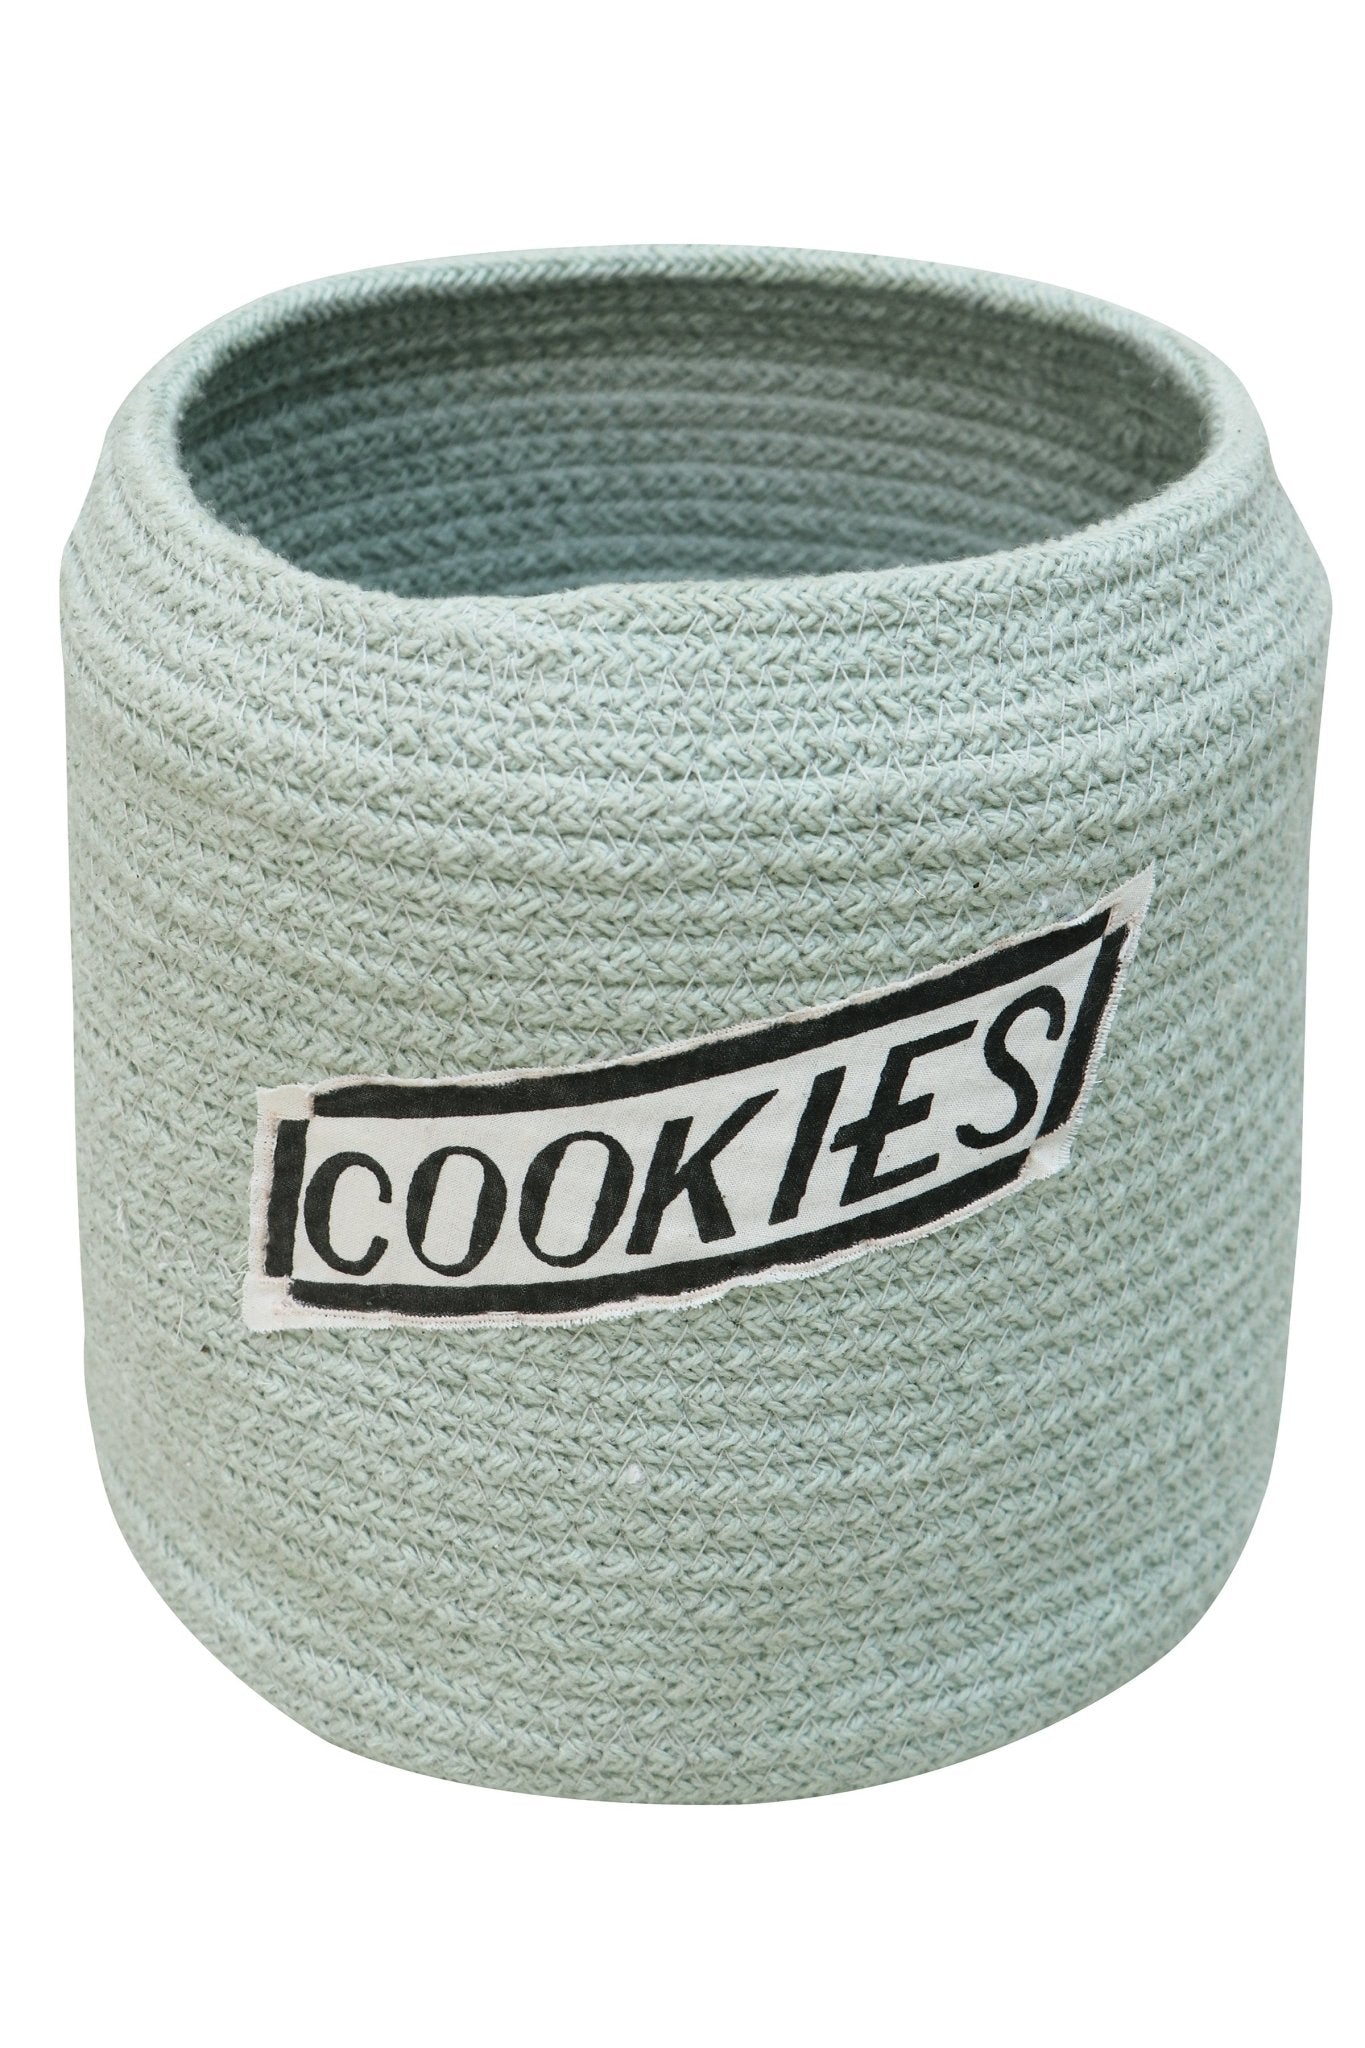 Lorena Canals Basket Cookie Jar - Fancy Nursery